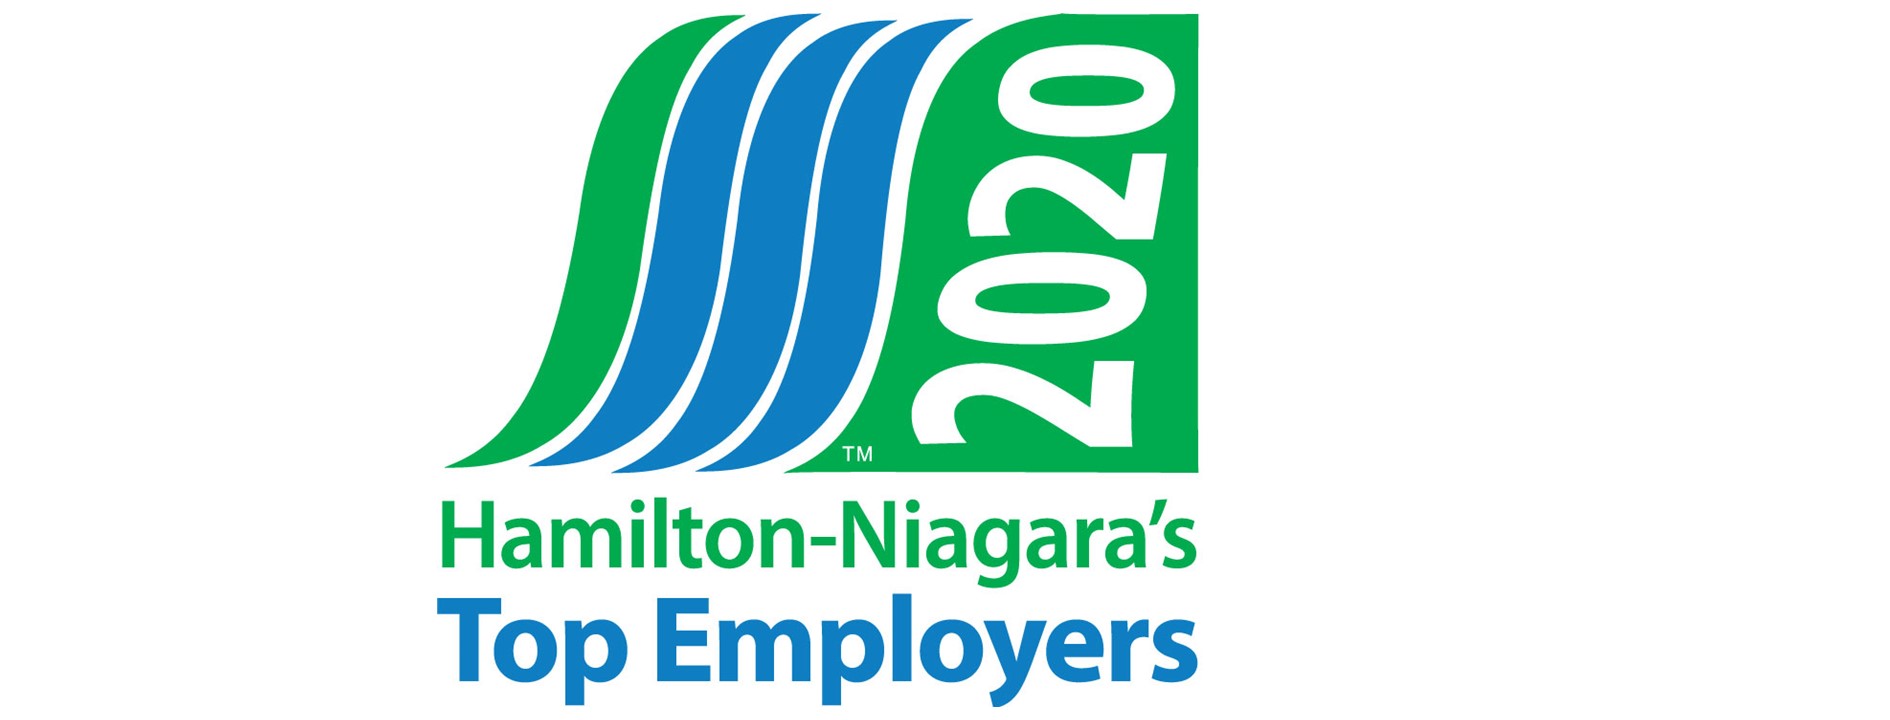 Hamilton Niagara Top Employer logo 2020